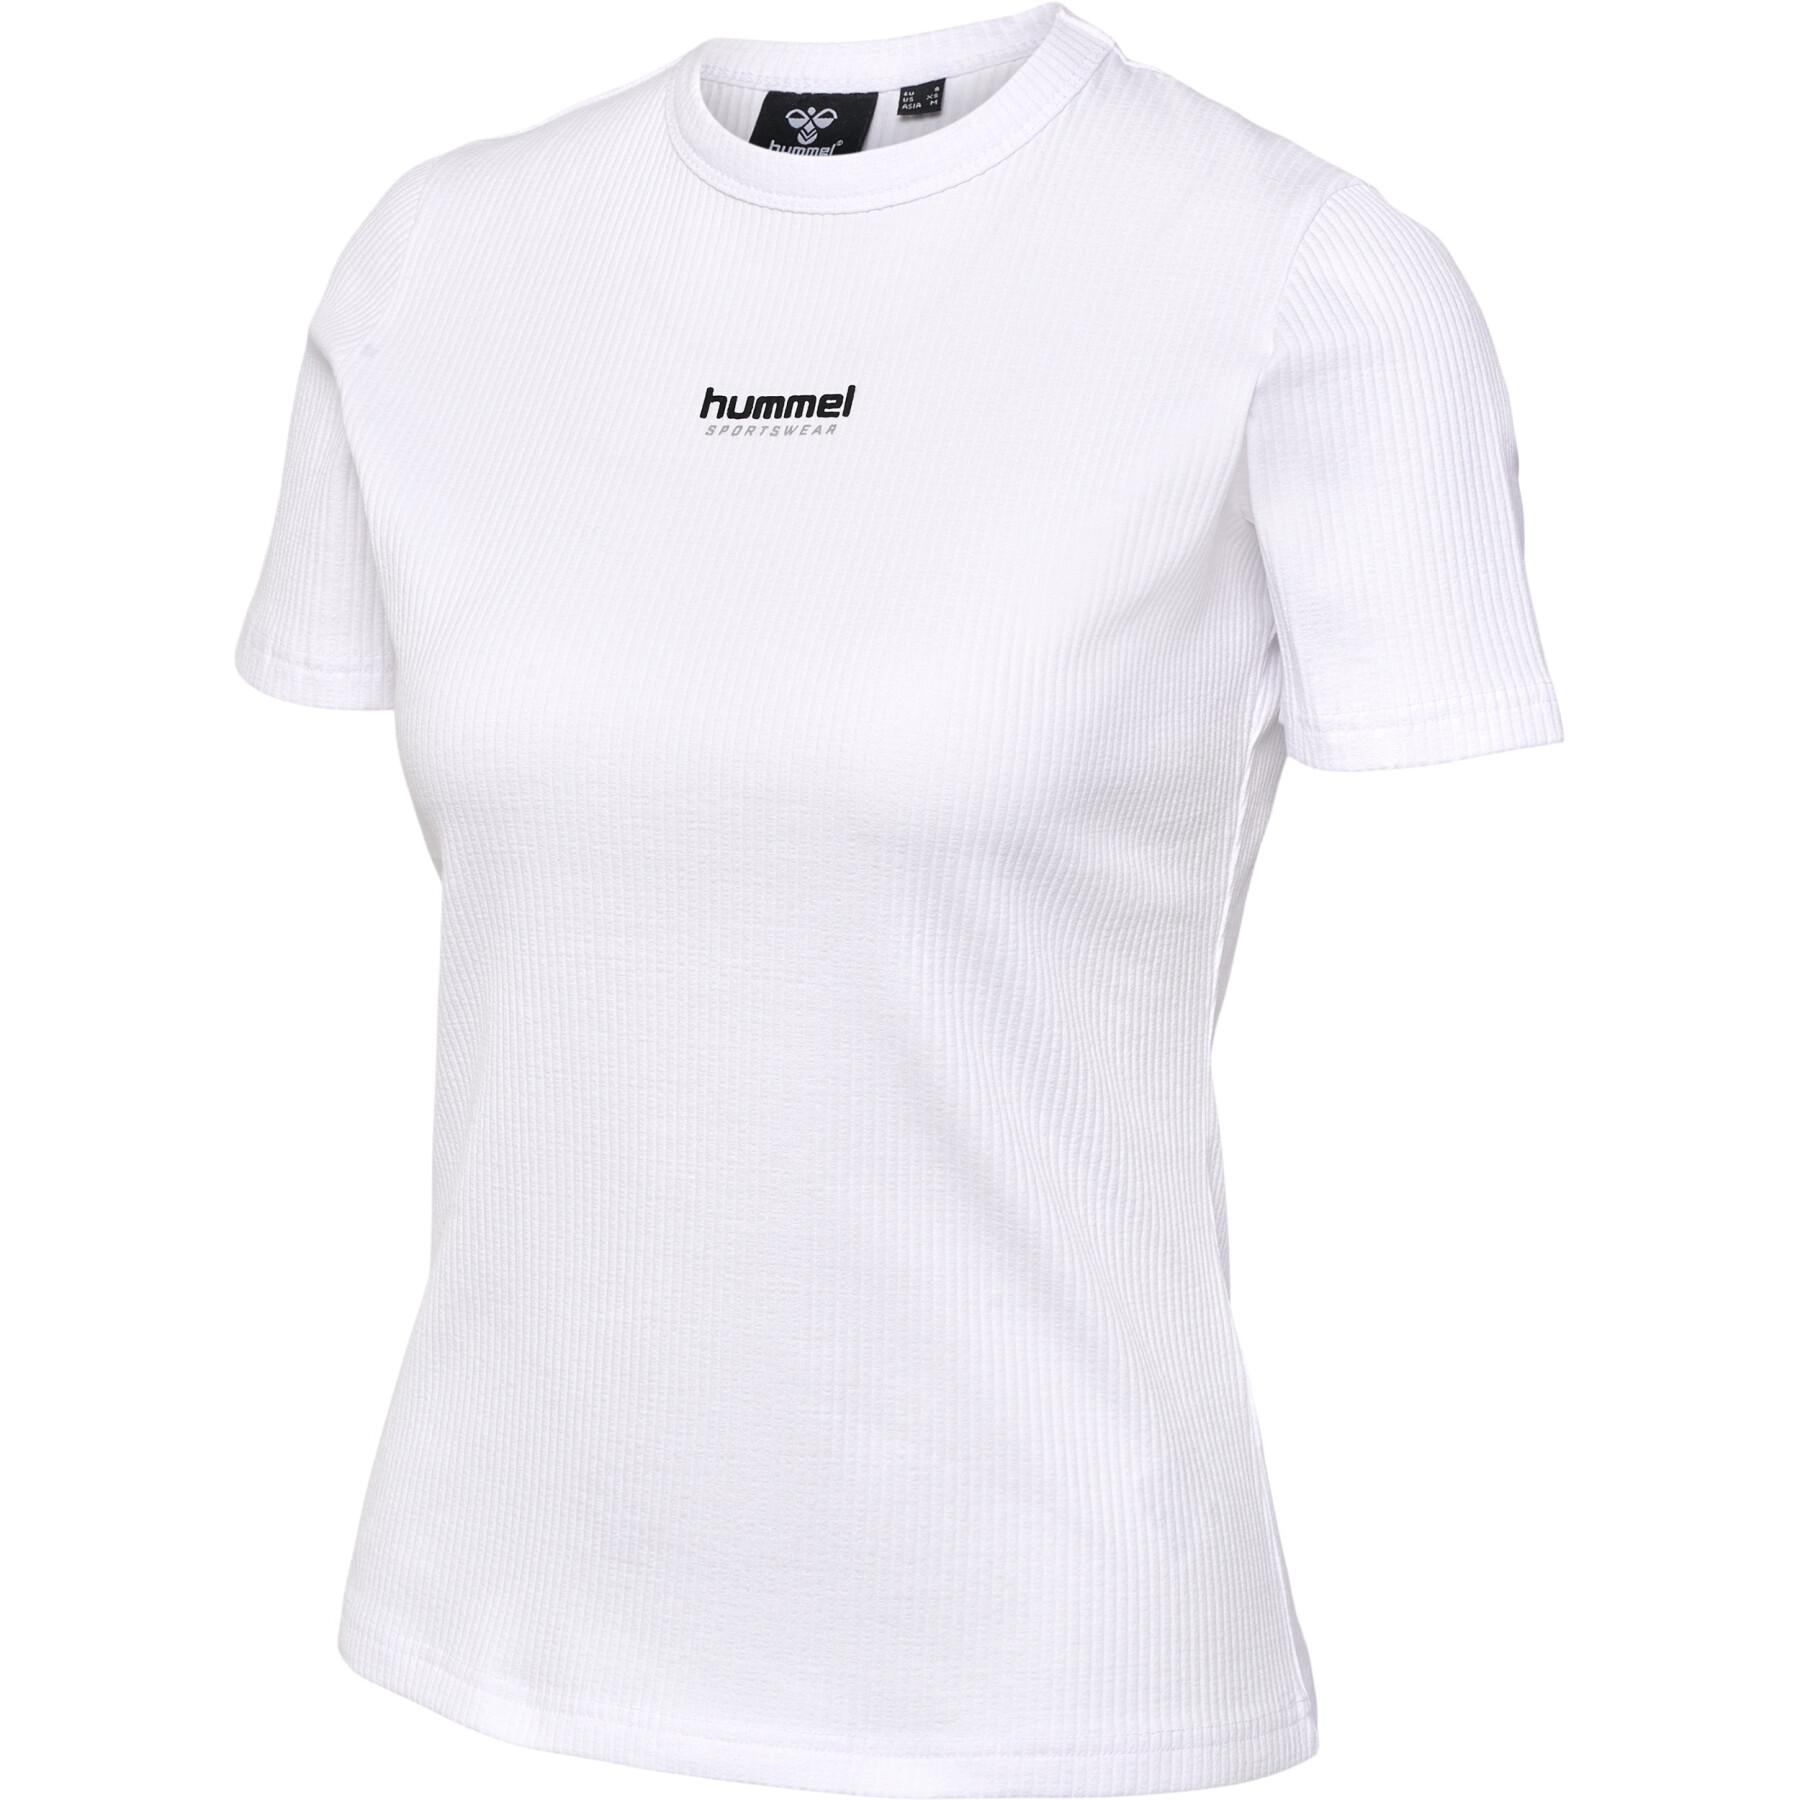 Women's T-shirt Hummel Lgc Scarlett